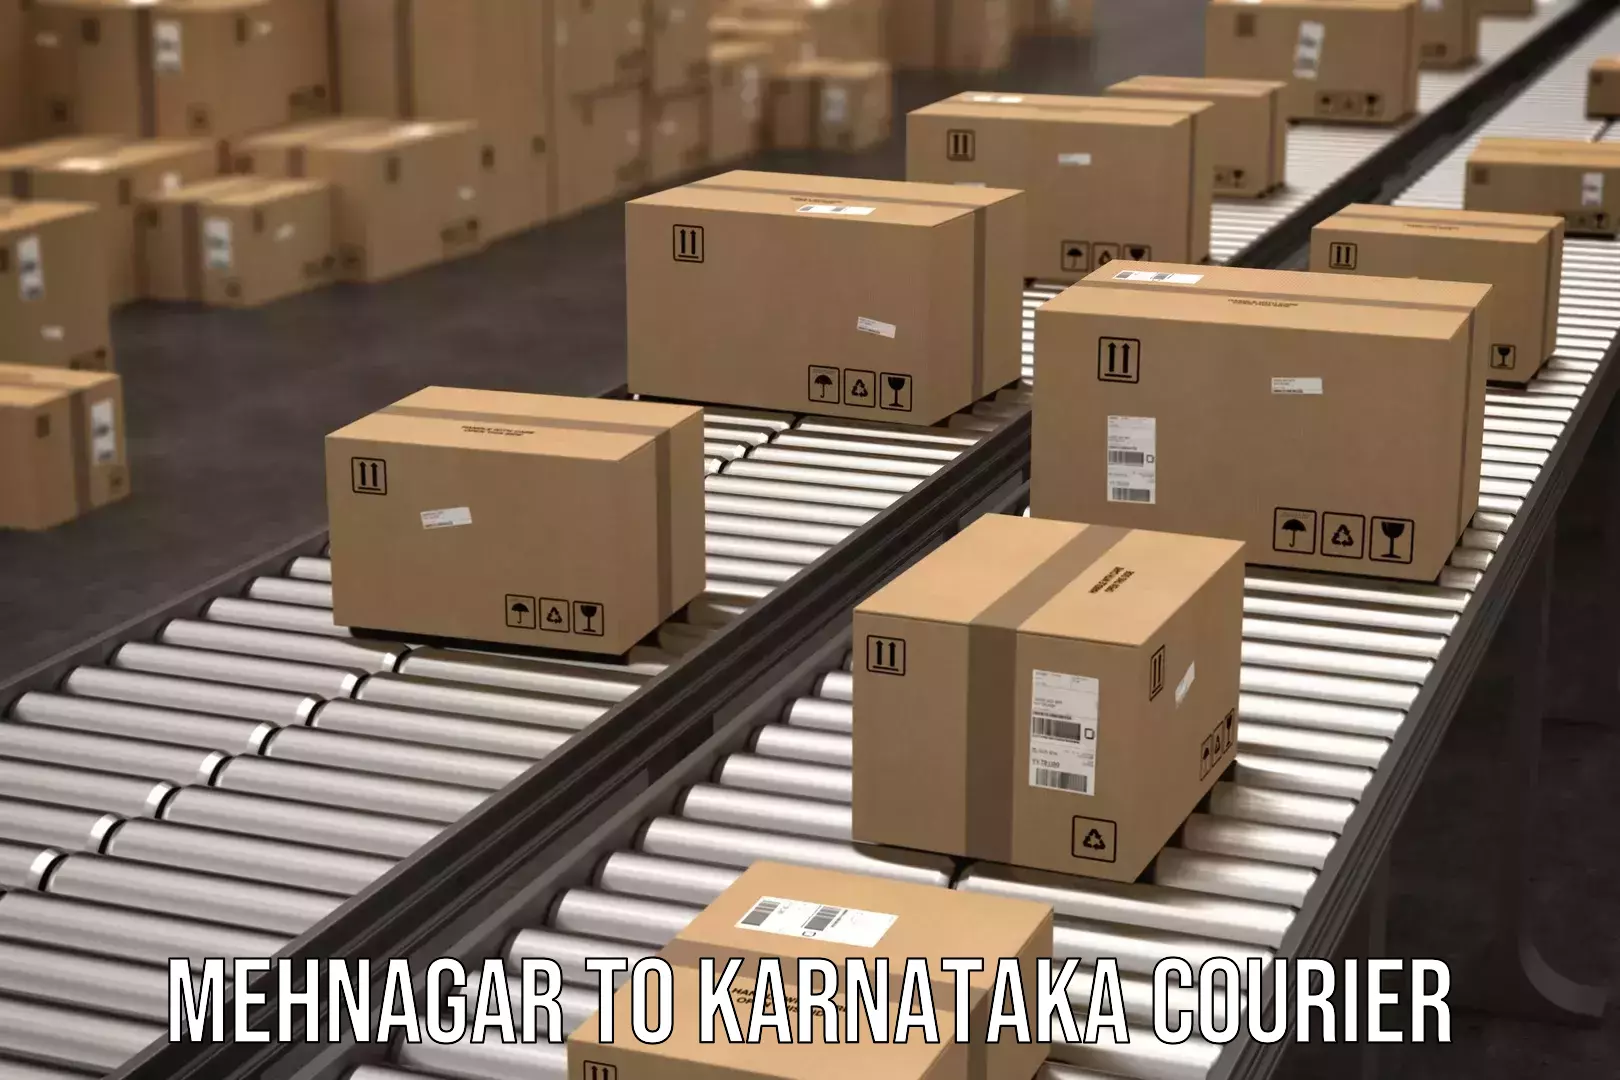 Door-to-door freight service Mehnagar to Karnataka